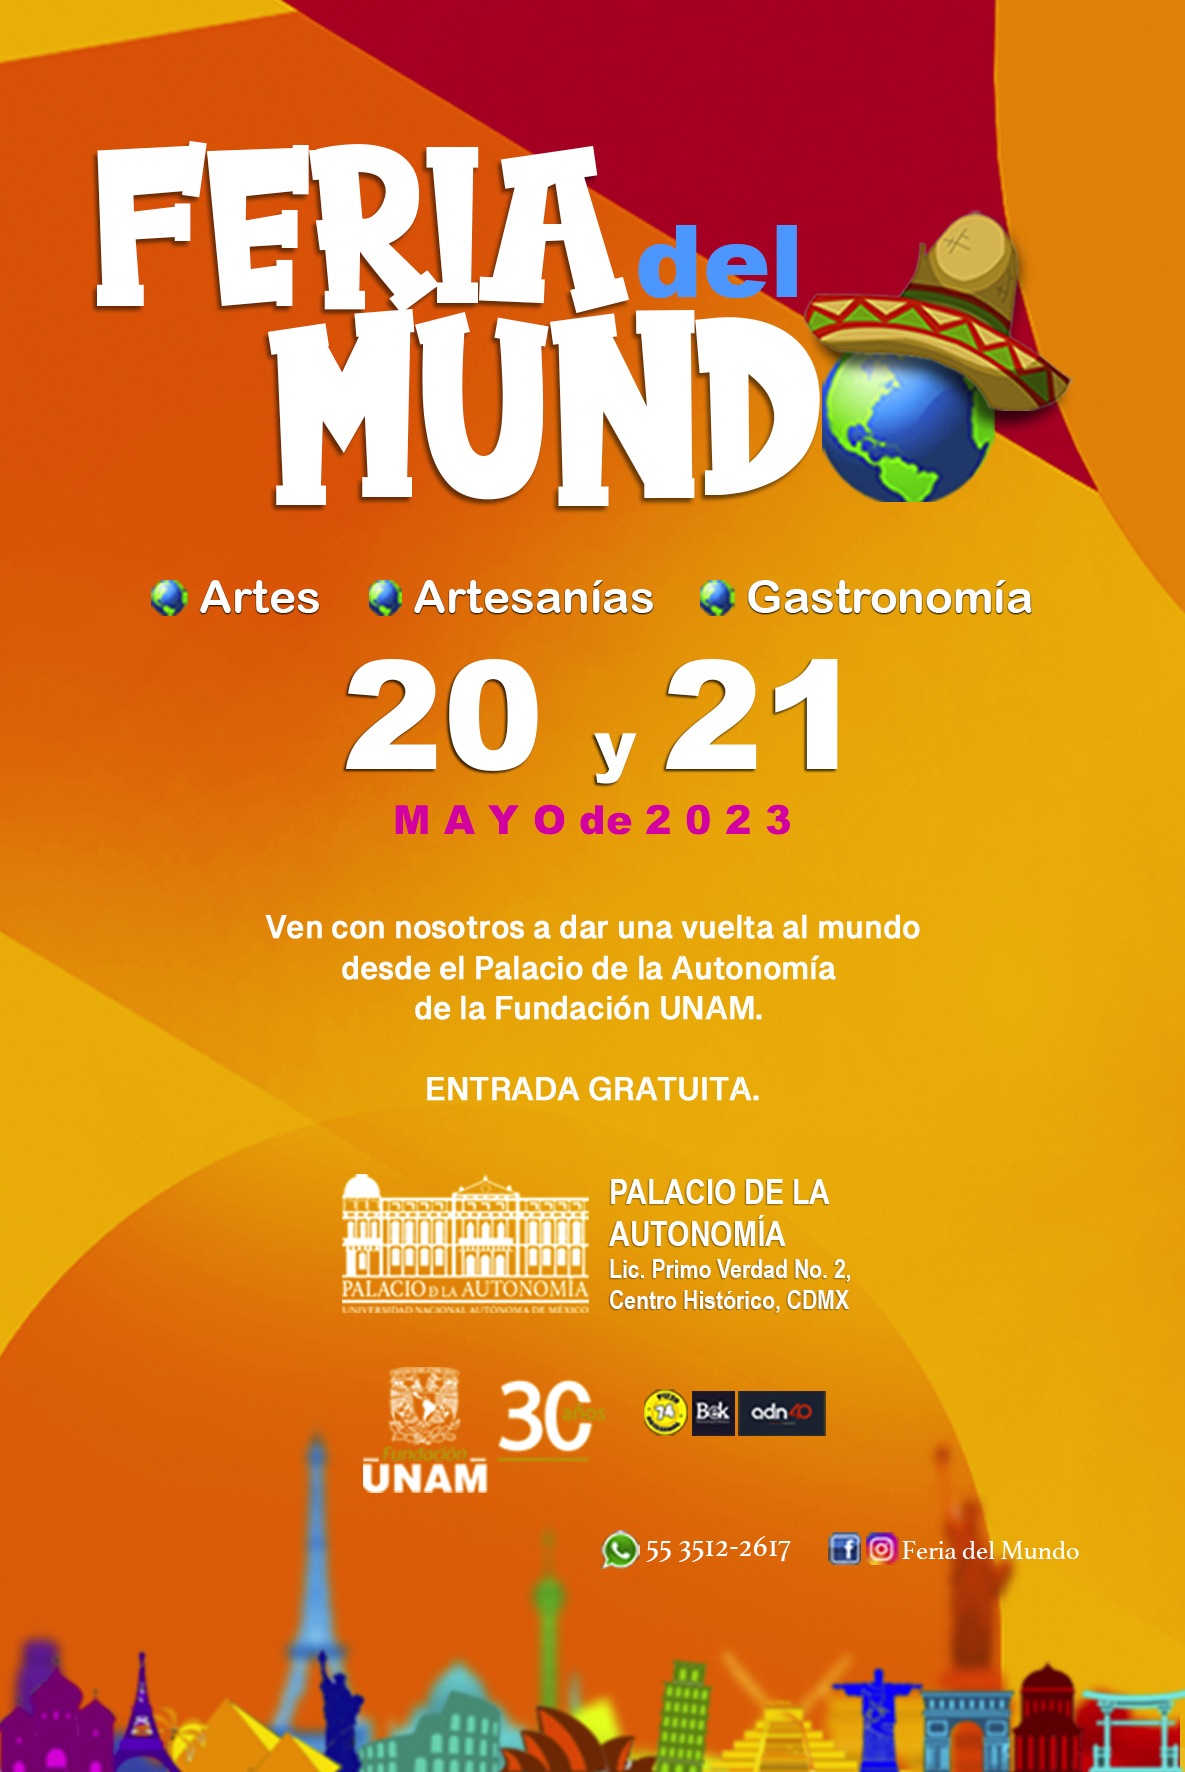 Los días 20 y 21 de mayo se llevará a cabo la Feria del Mundo en el Palacio de la Autonomía de la Fundación UNAM